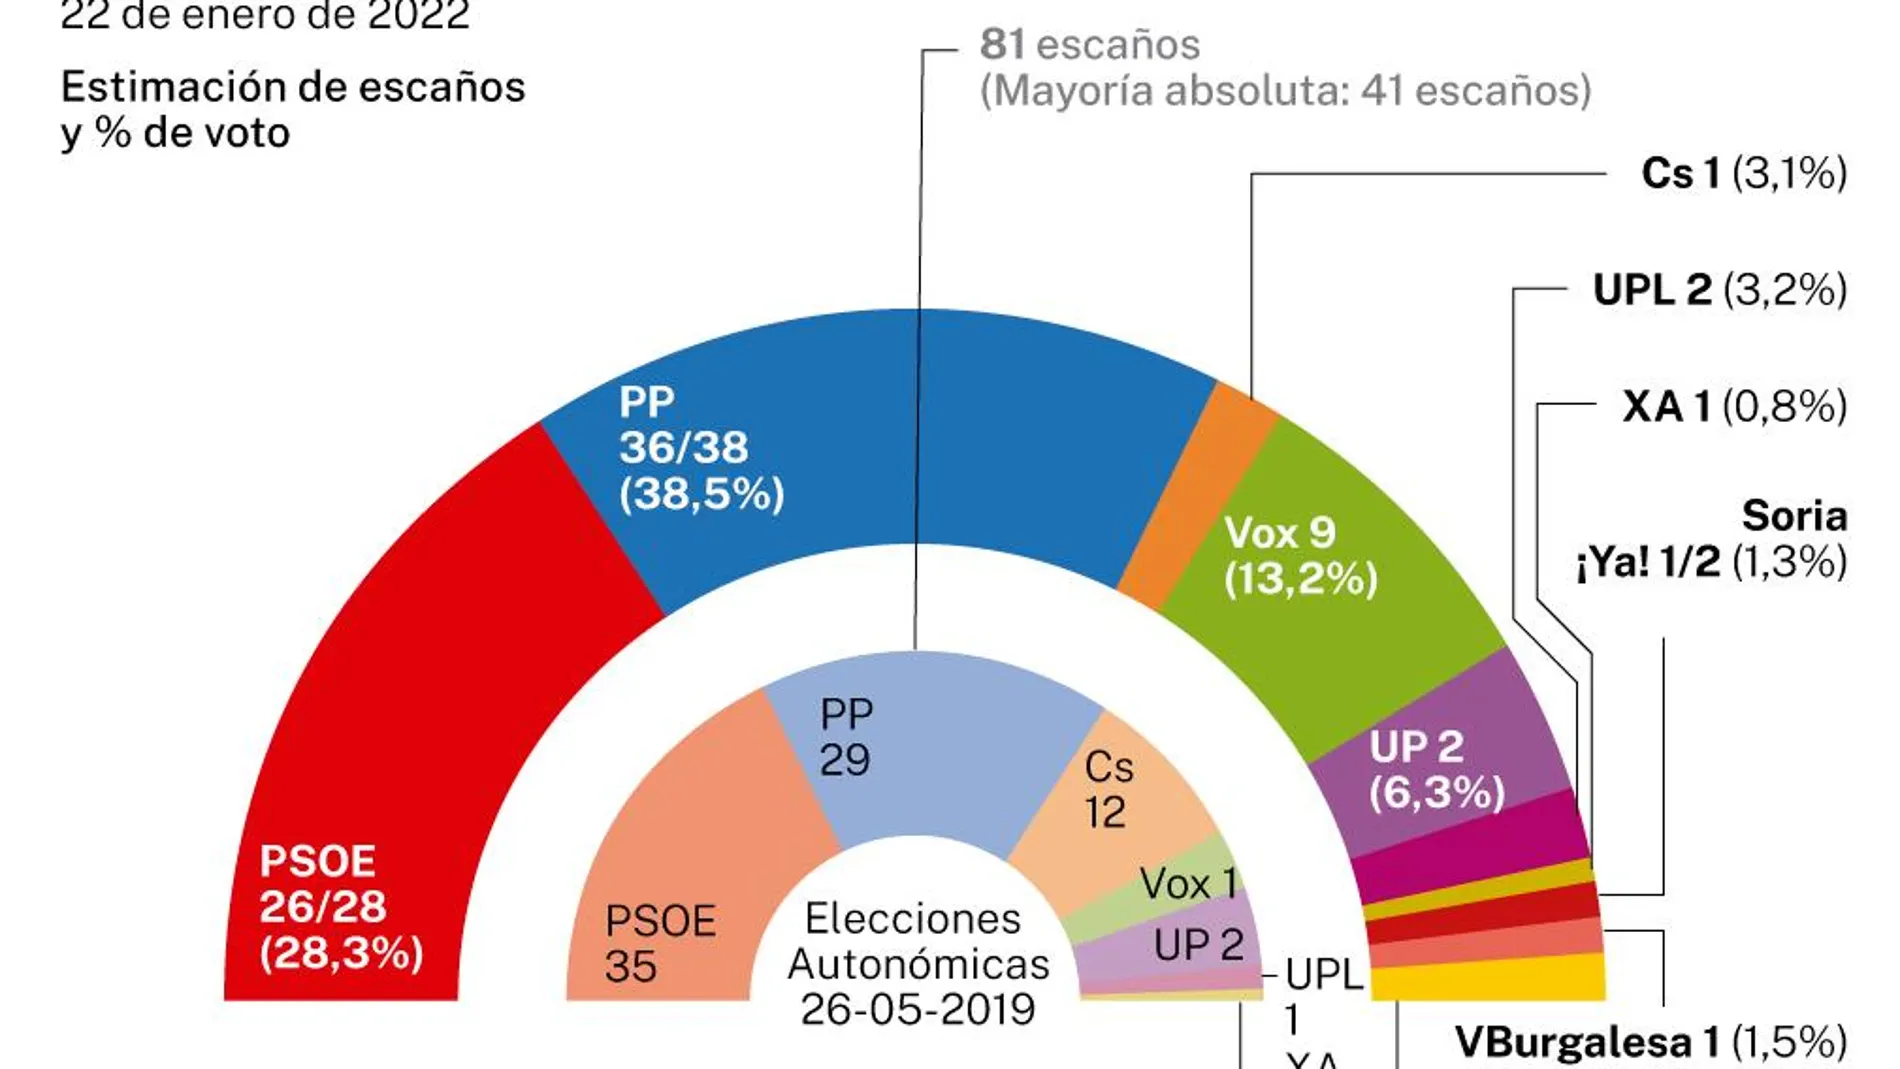 Encuesta electoral Castilla León, NC Report